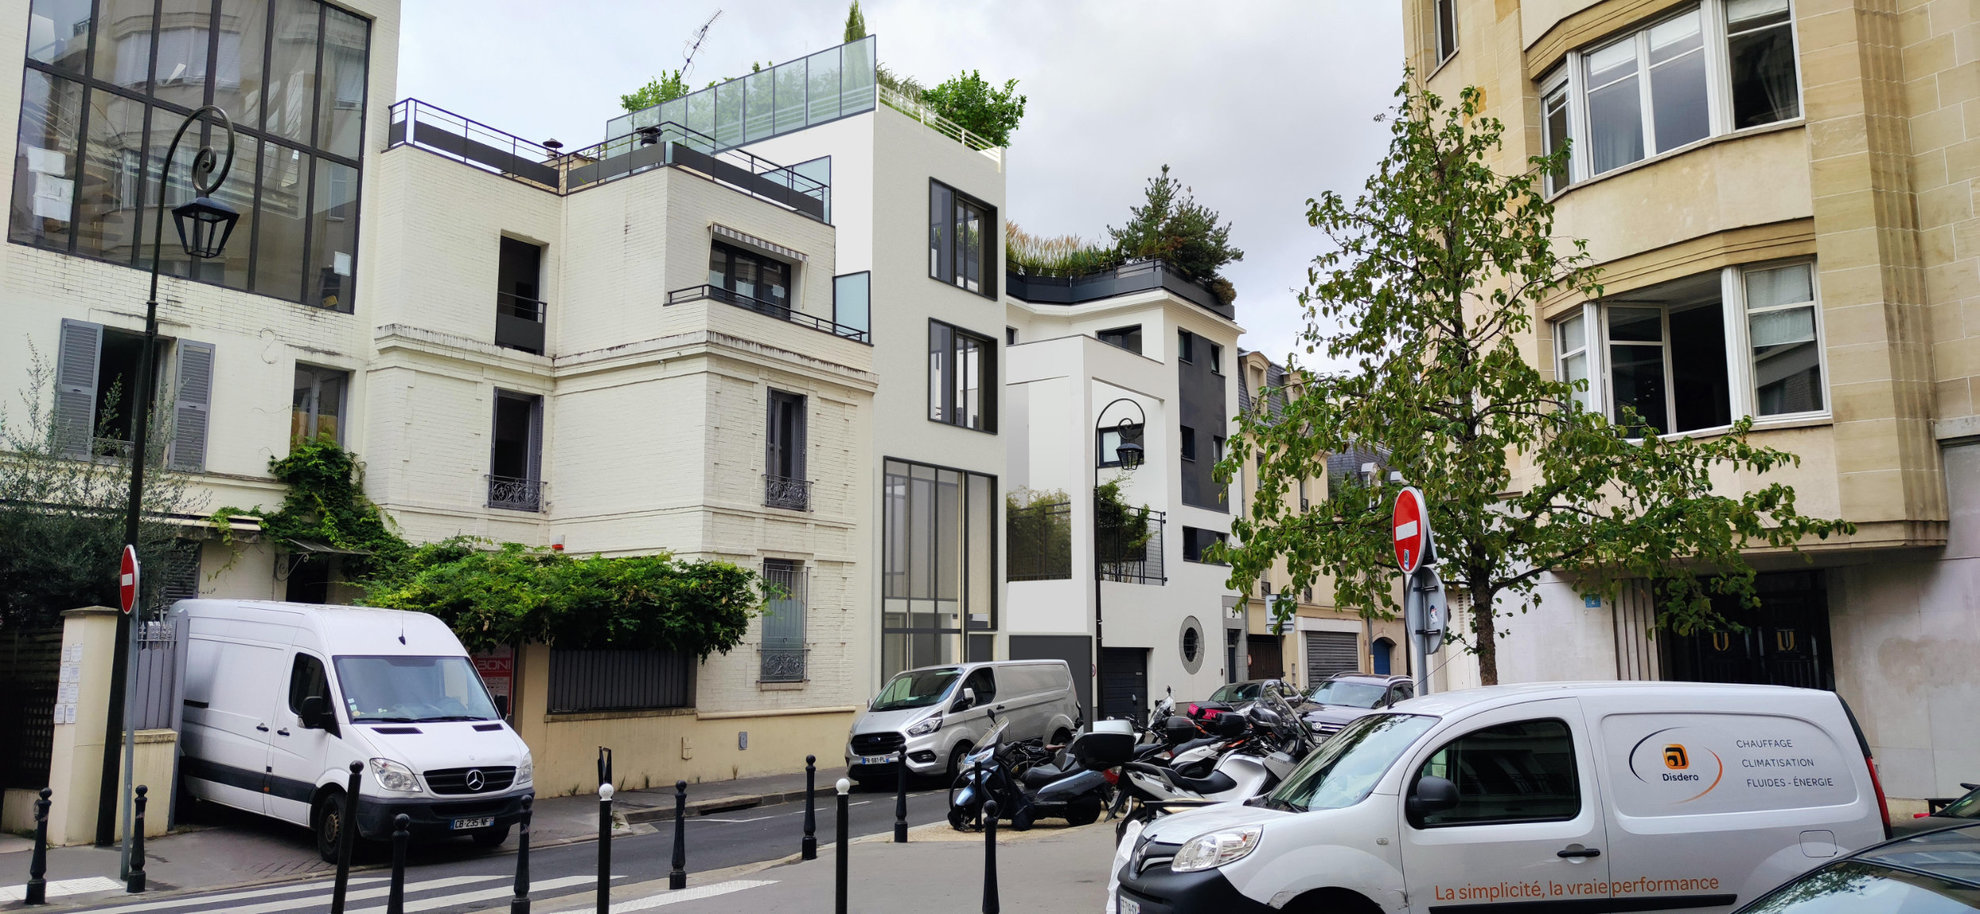 Parlange architecte - Boulogne Billancourt 2020